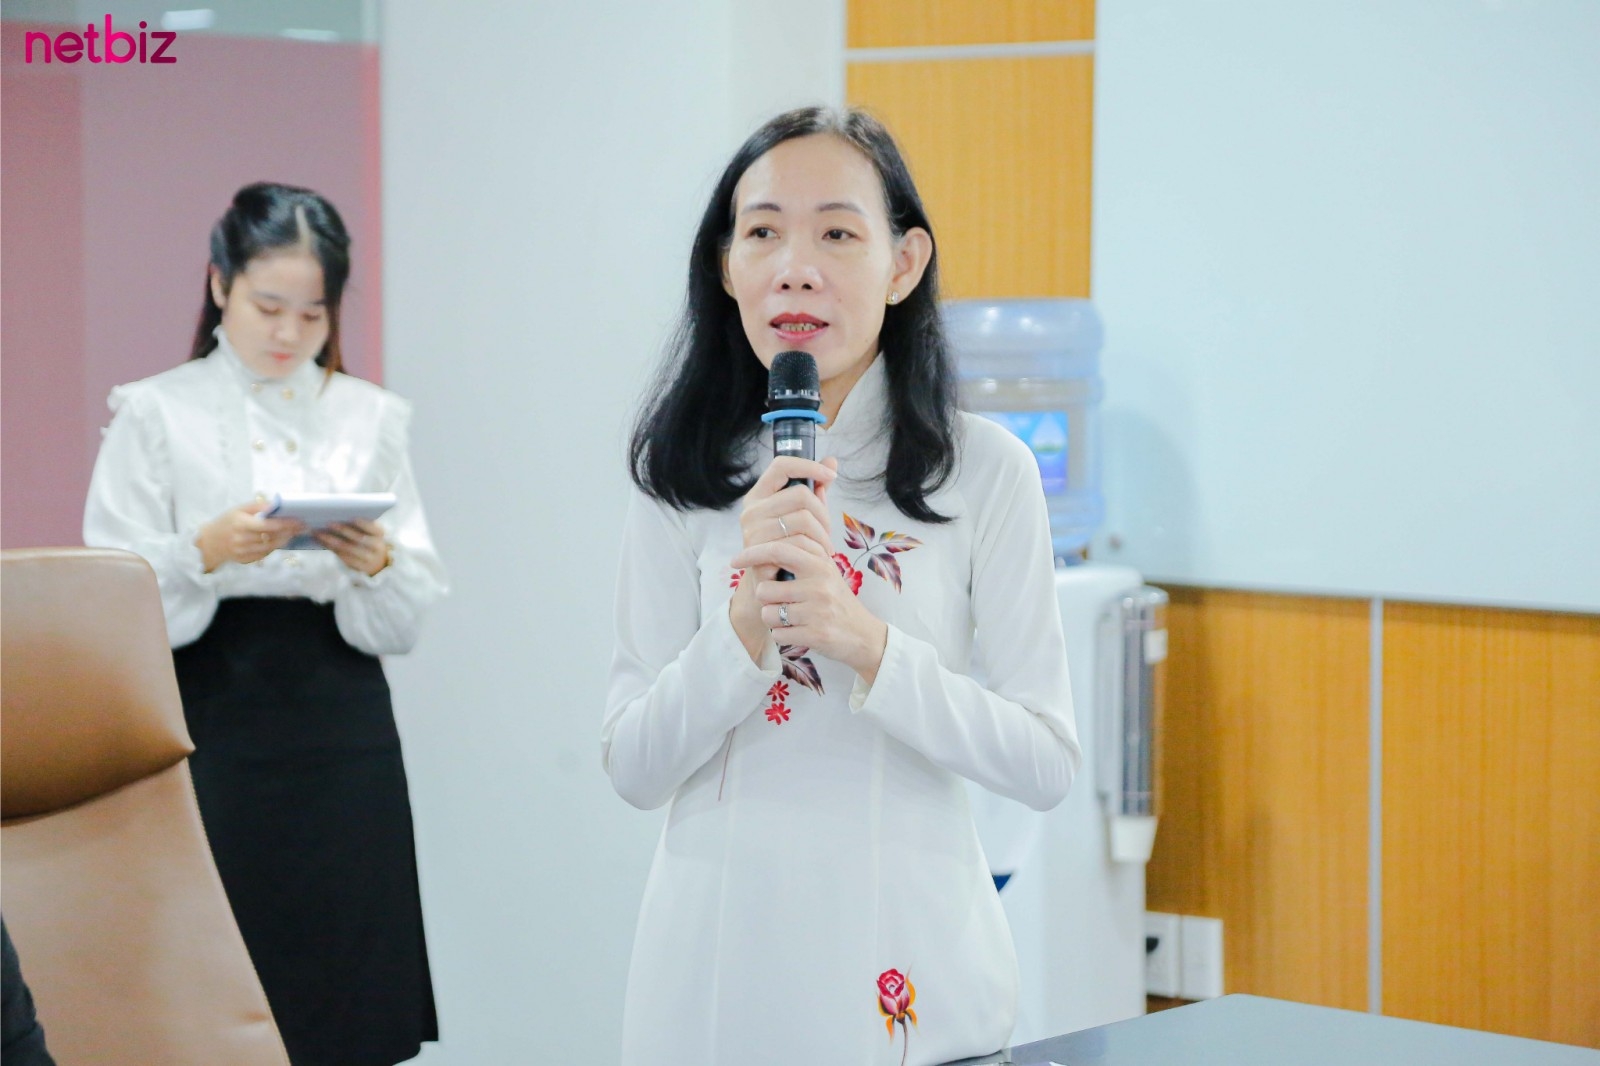 MCV Group hợp tác với Đại học Văn Lang tạo đột phá trong truyền thông giáo dục